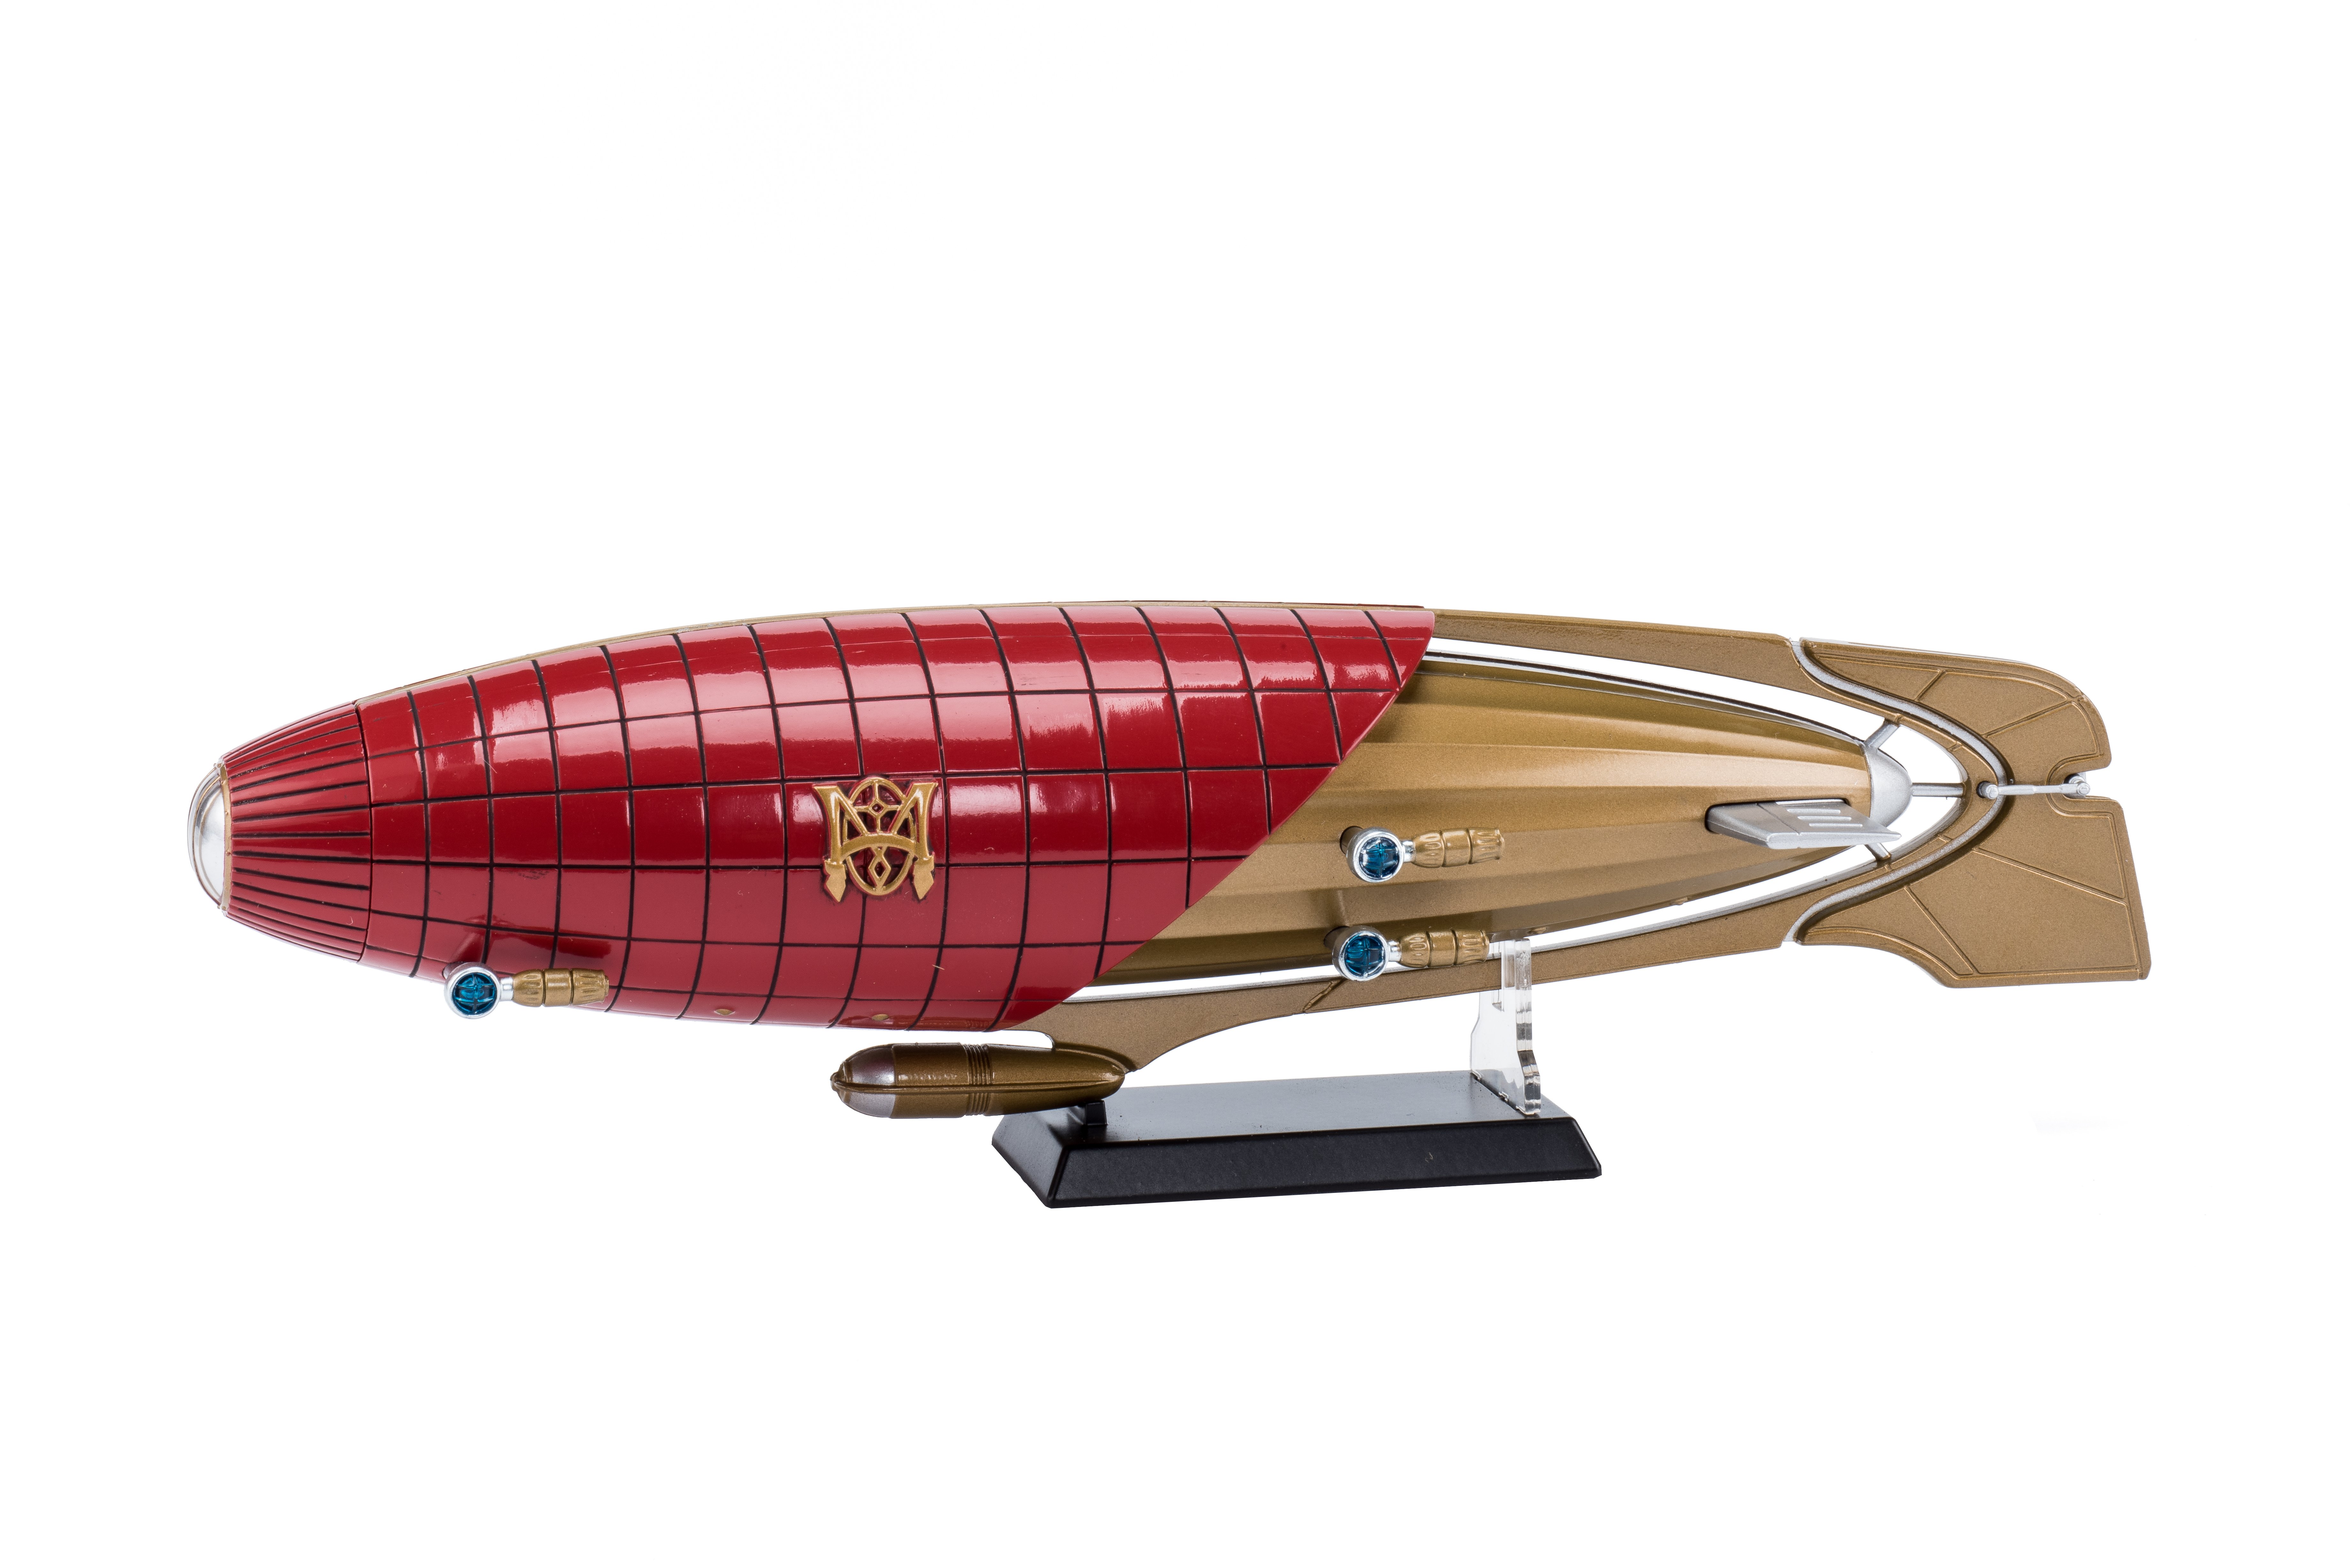 Modell: Luftschiff aus dem Fantasyfilm "Der goldene Kompass" (Zeppelin Museum Friedrichshafen GmbH CC BY-NC-SA)